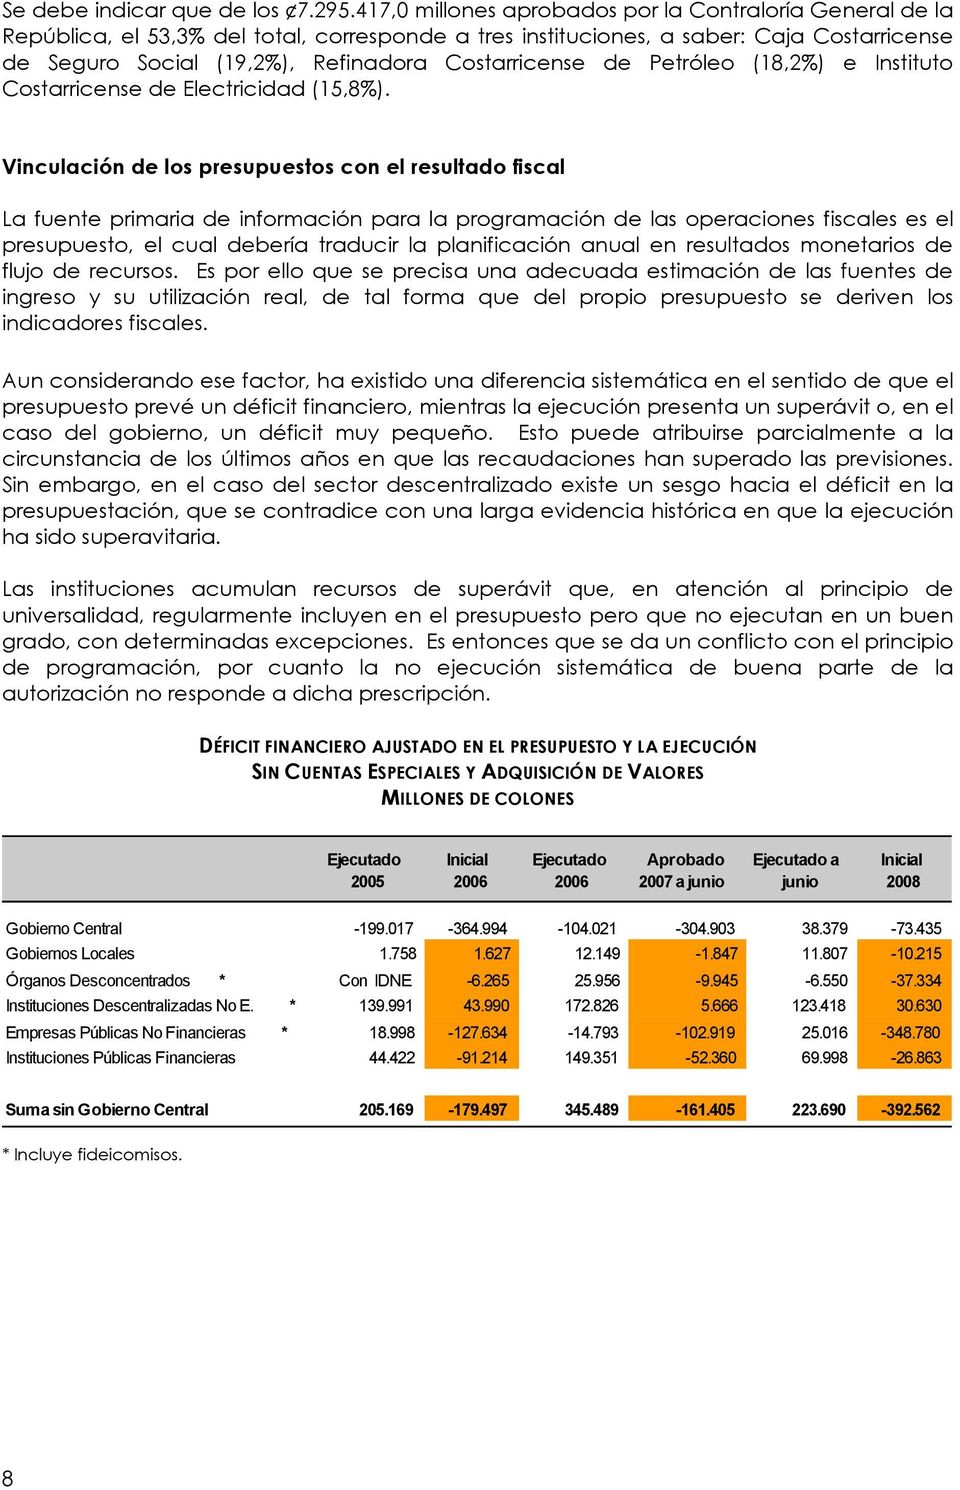 Costarricense de Petróleo (18,2%) e Instituto Costarricense de Electricidad (15,8%).